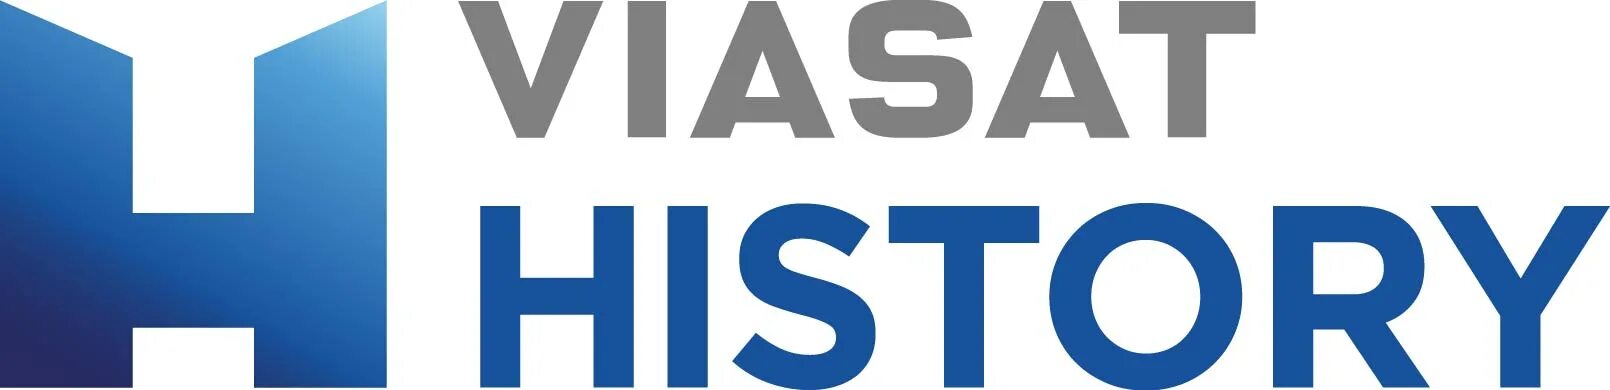 Канал история эфир. Viasat History HD логотип. Телеканал Виасат хистори. Телеканал Viasat History HD. Логотип телеканала Viasat nature.